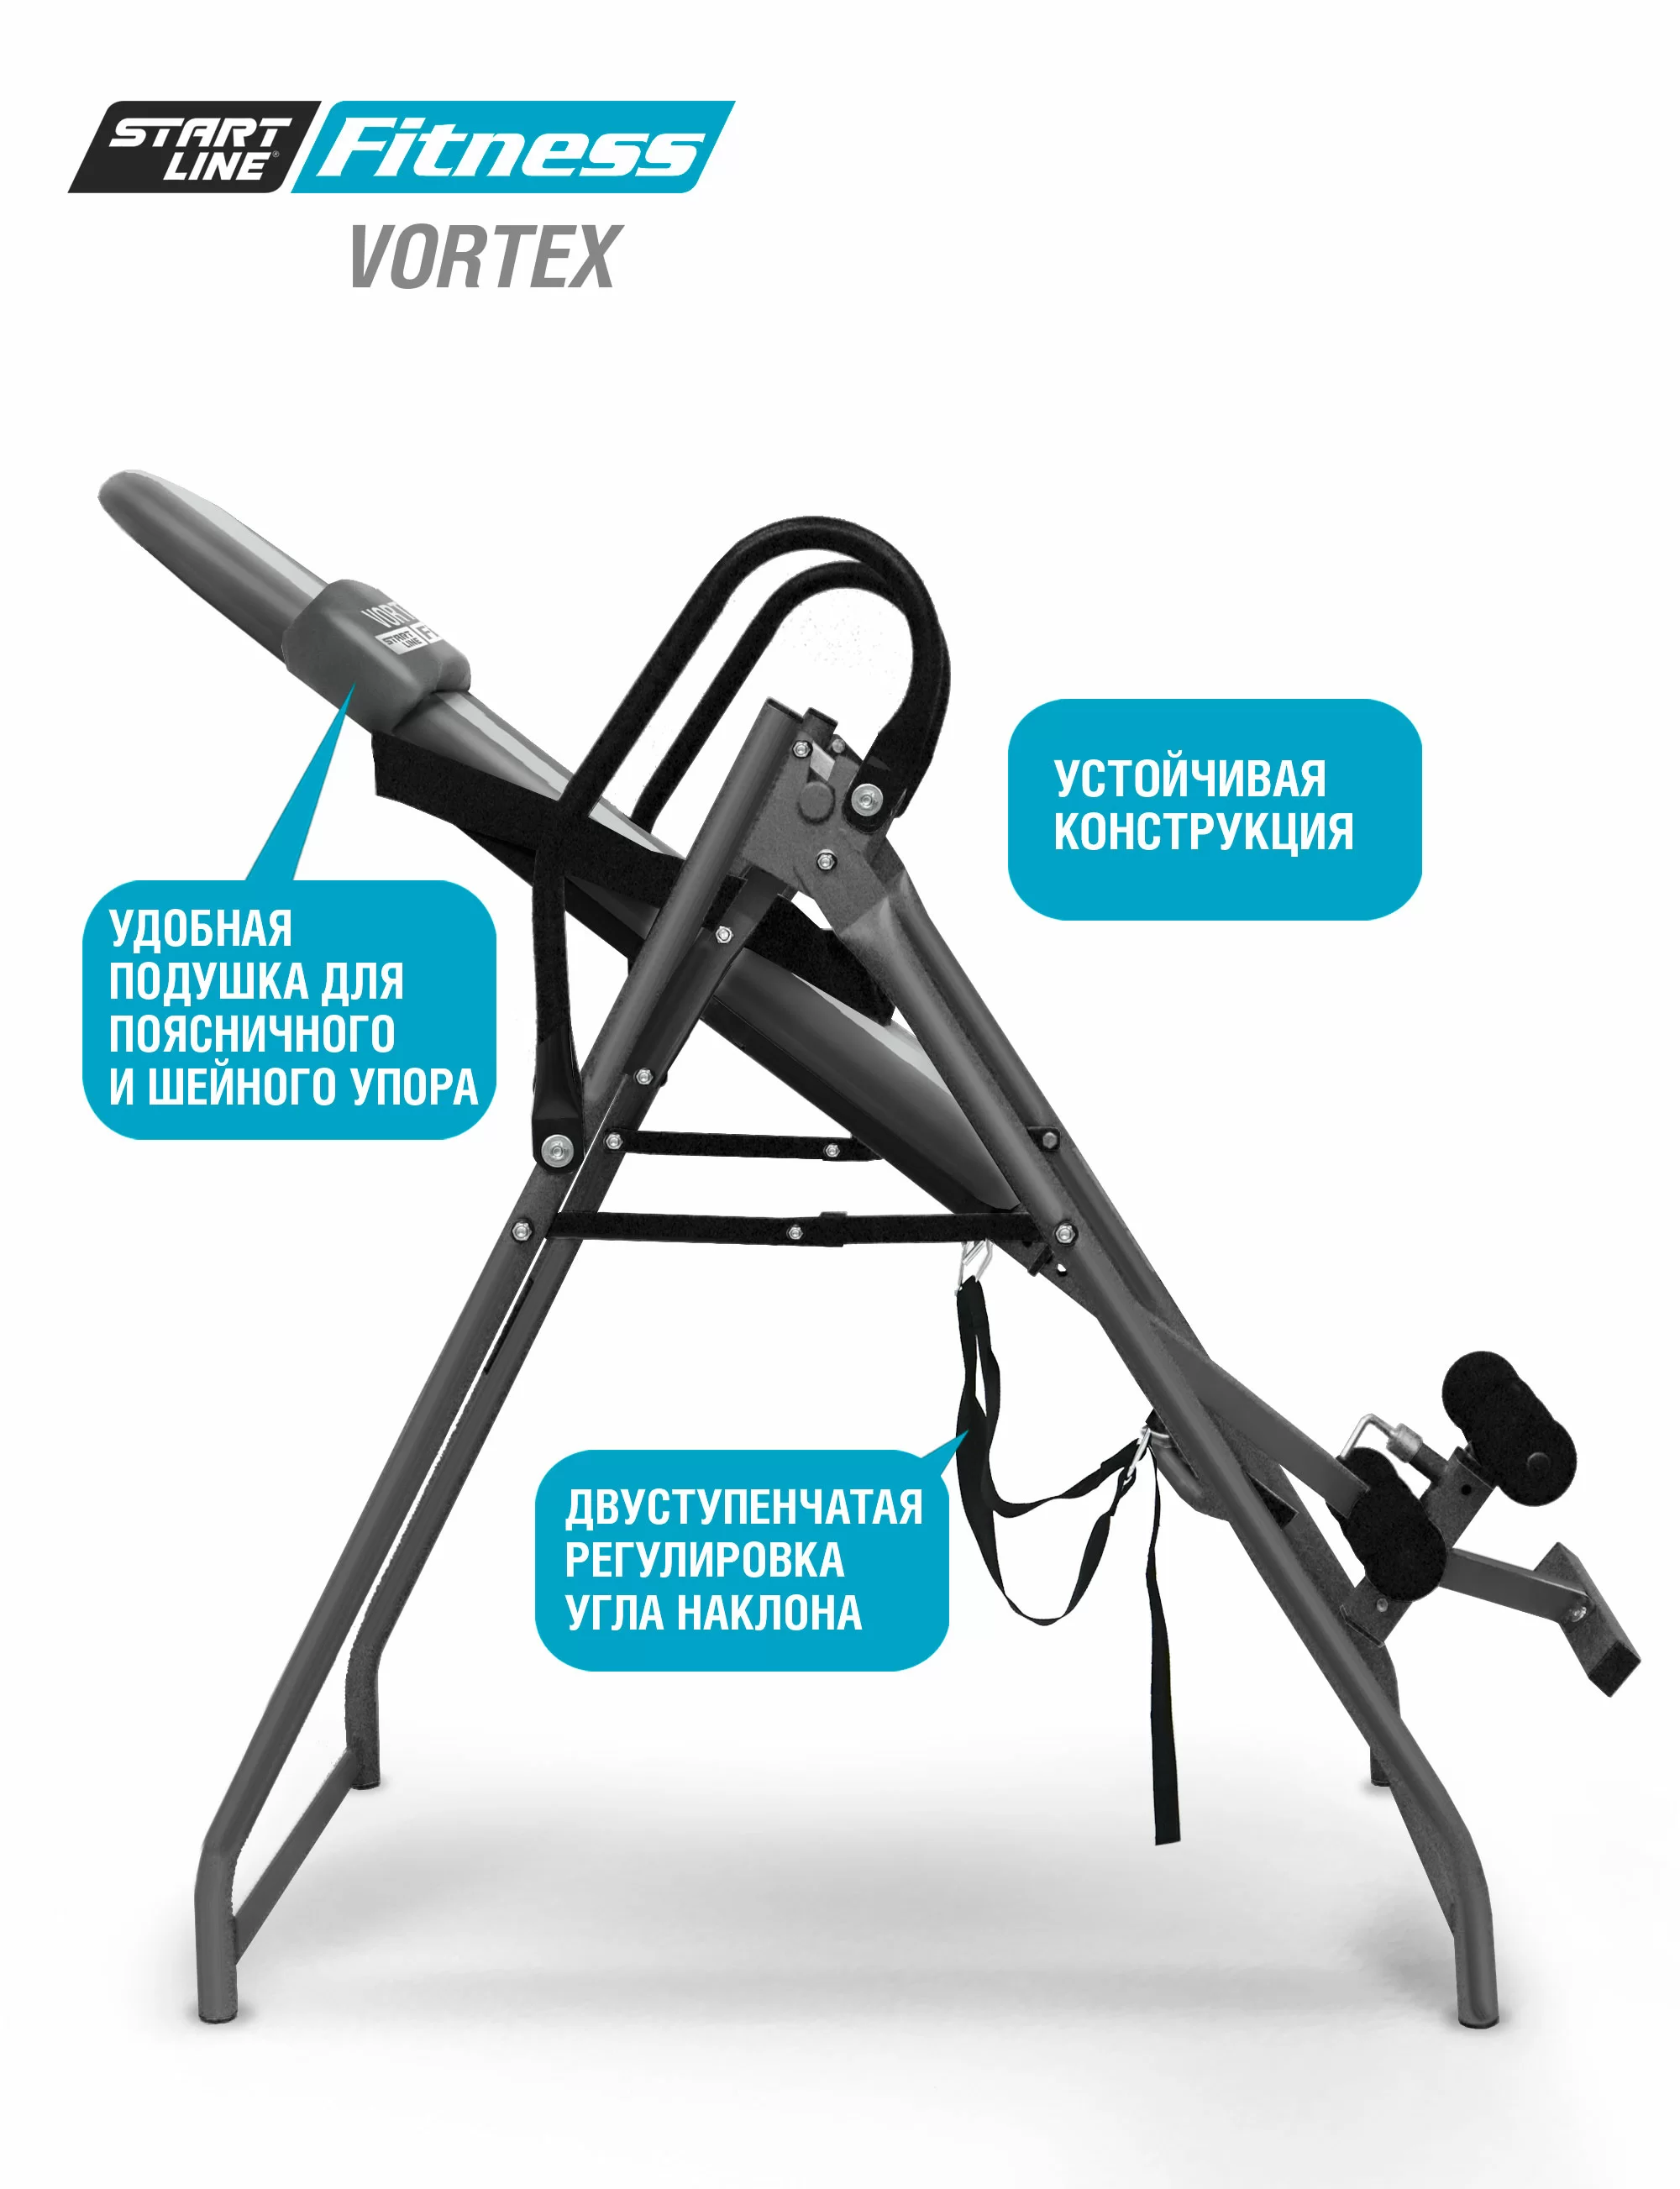 Реальное фото Инверсионный стол Vortex серо-серебристый с подушкой от магазина СпортЕВ